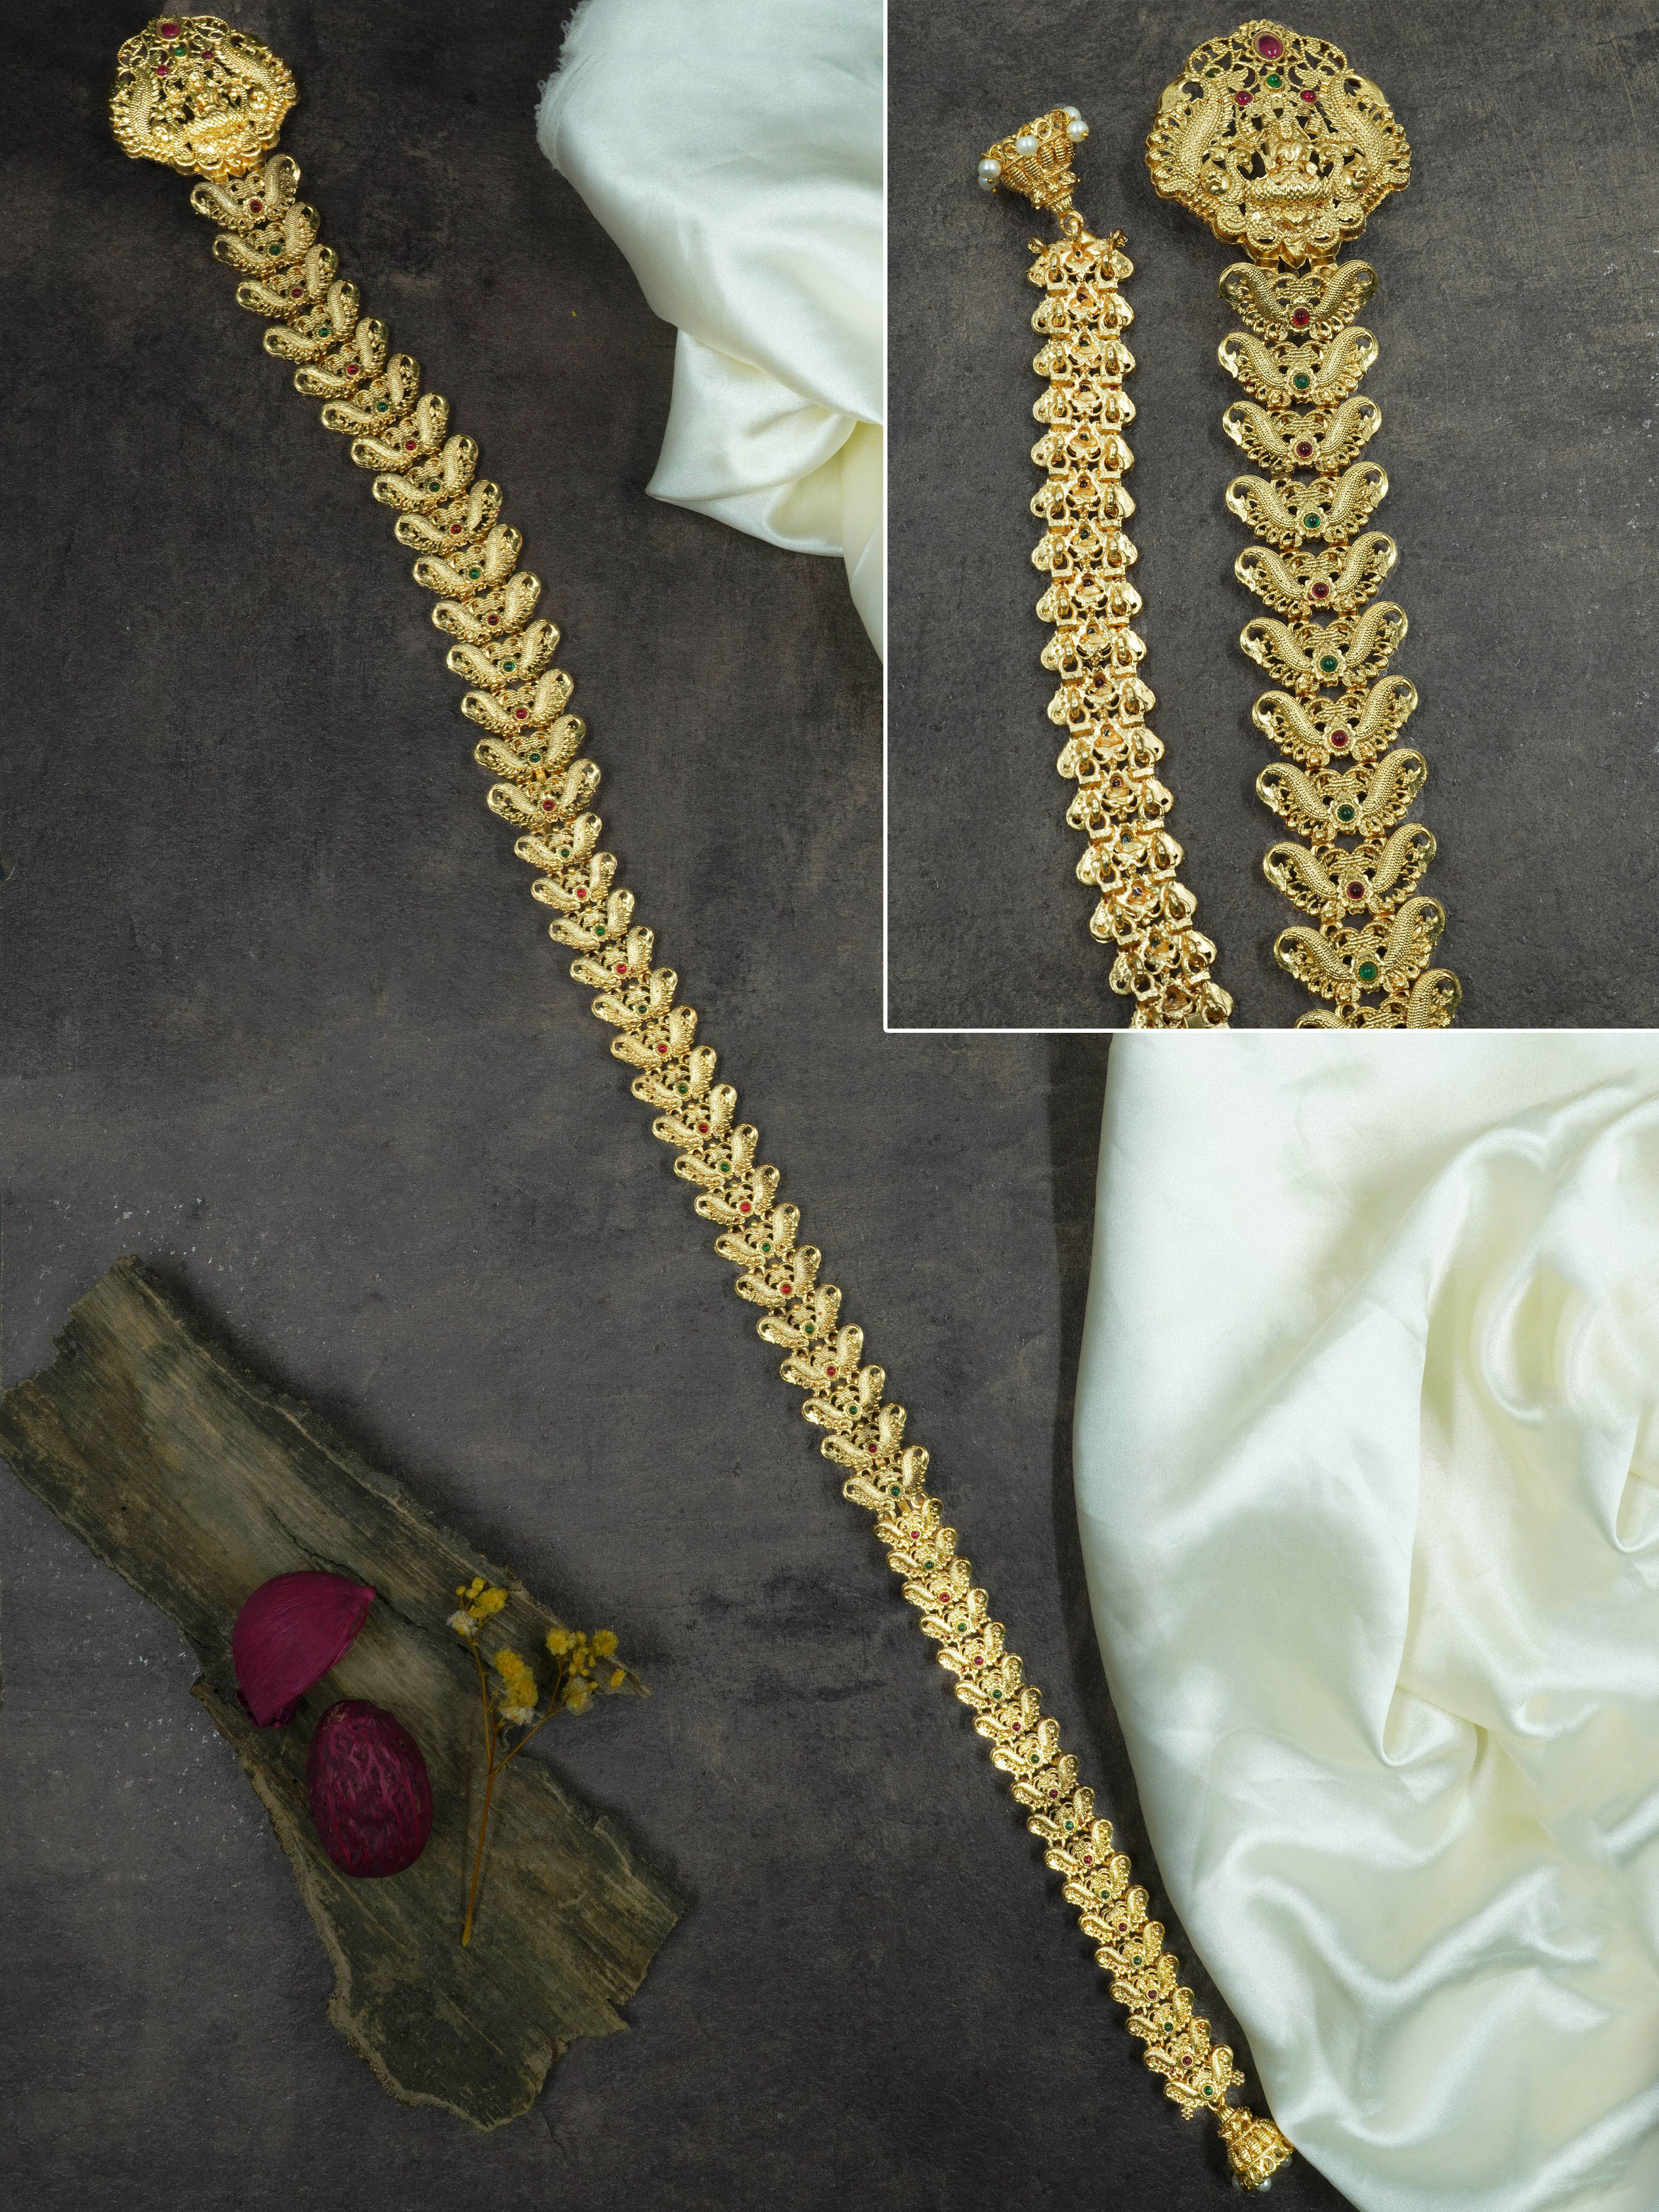 Gold Plated Bridal Hair Jada / Hair accessory / Choti 13037N